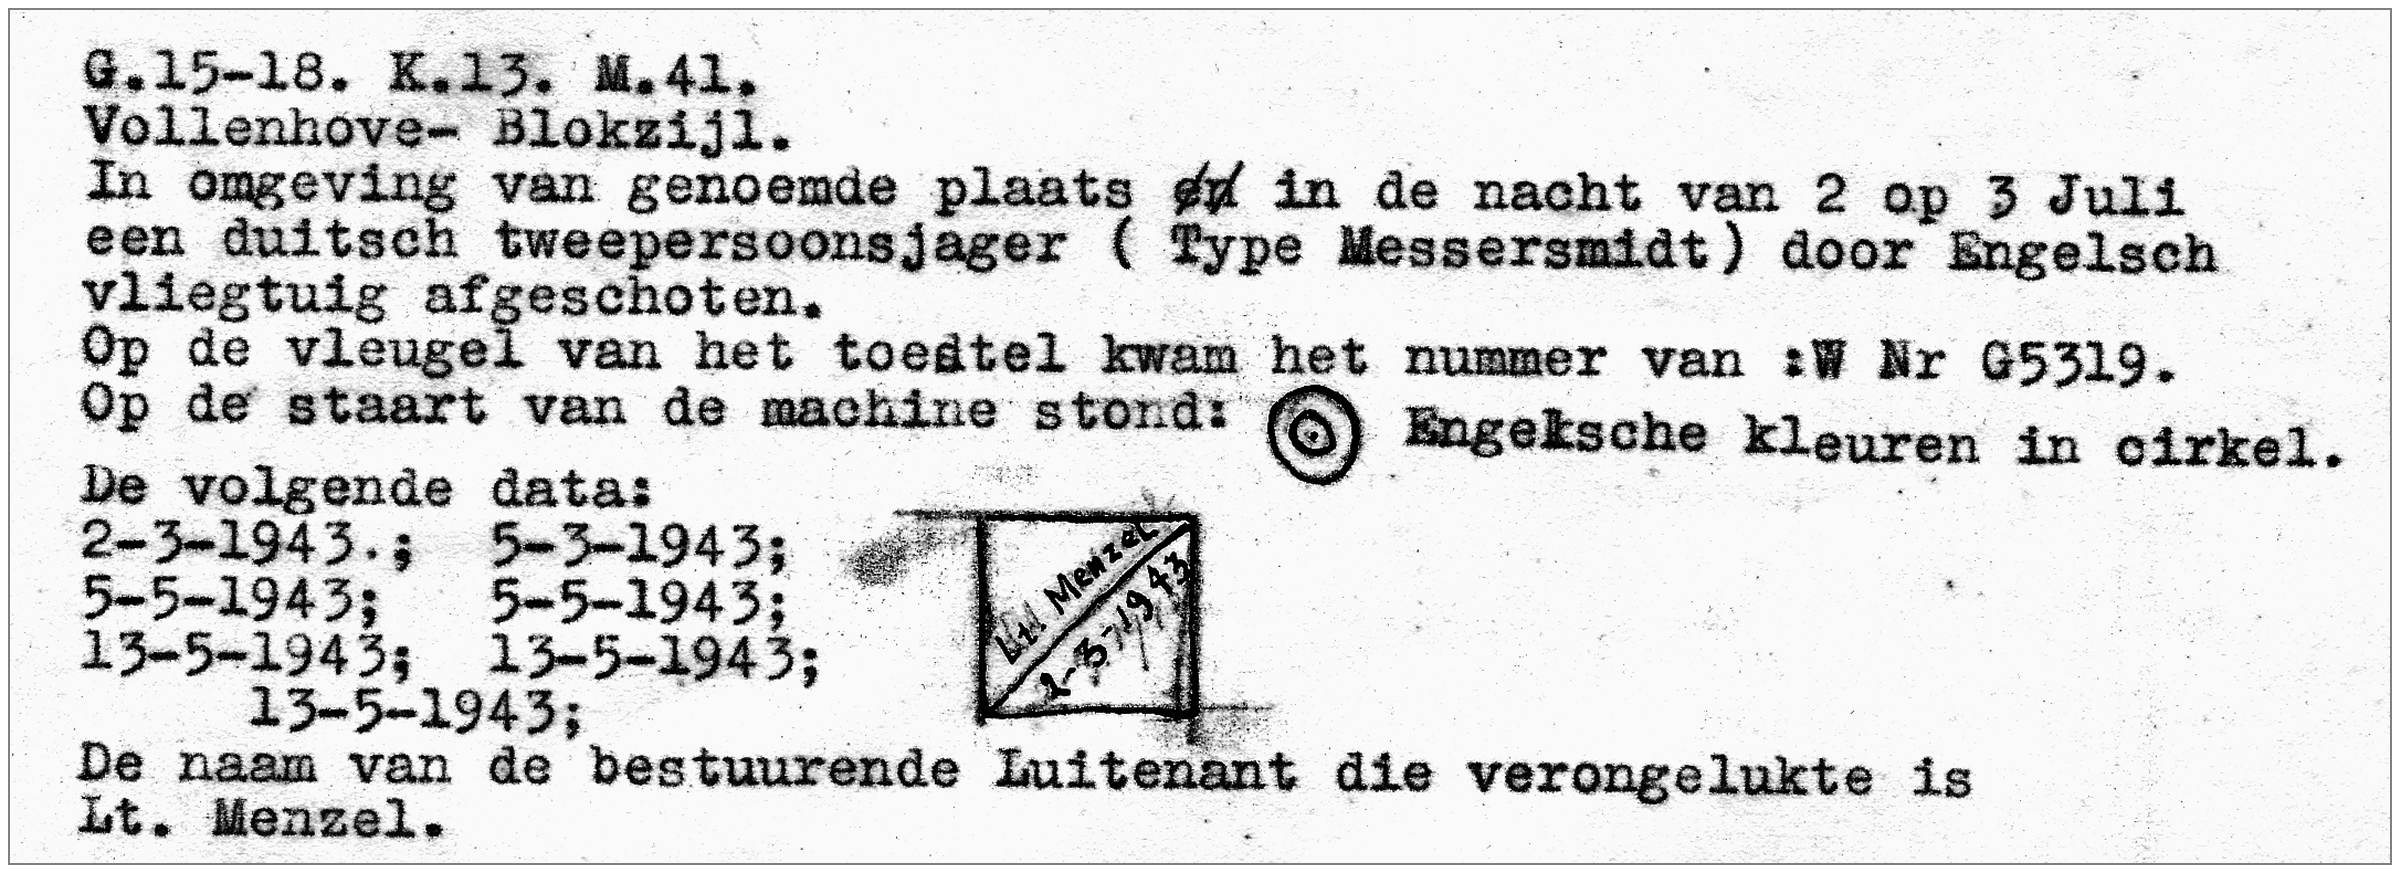 Message from GDN - Geheime Dienst Nederland - archive Poortman